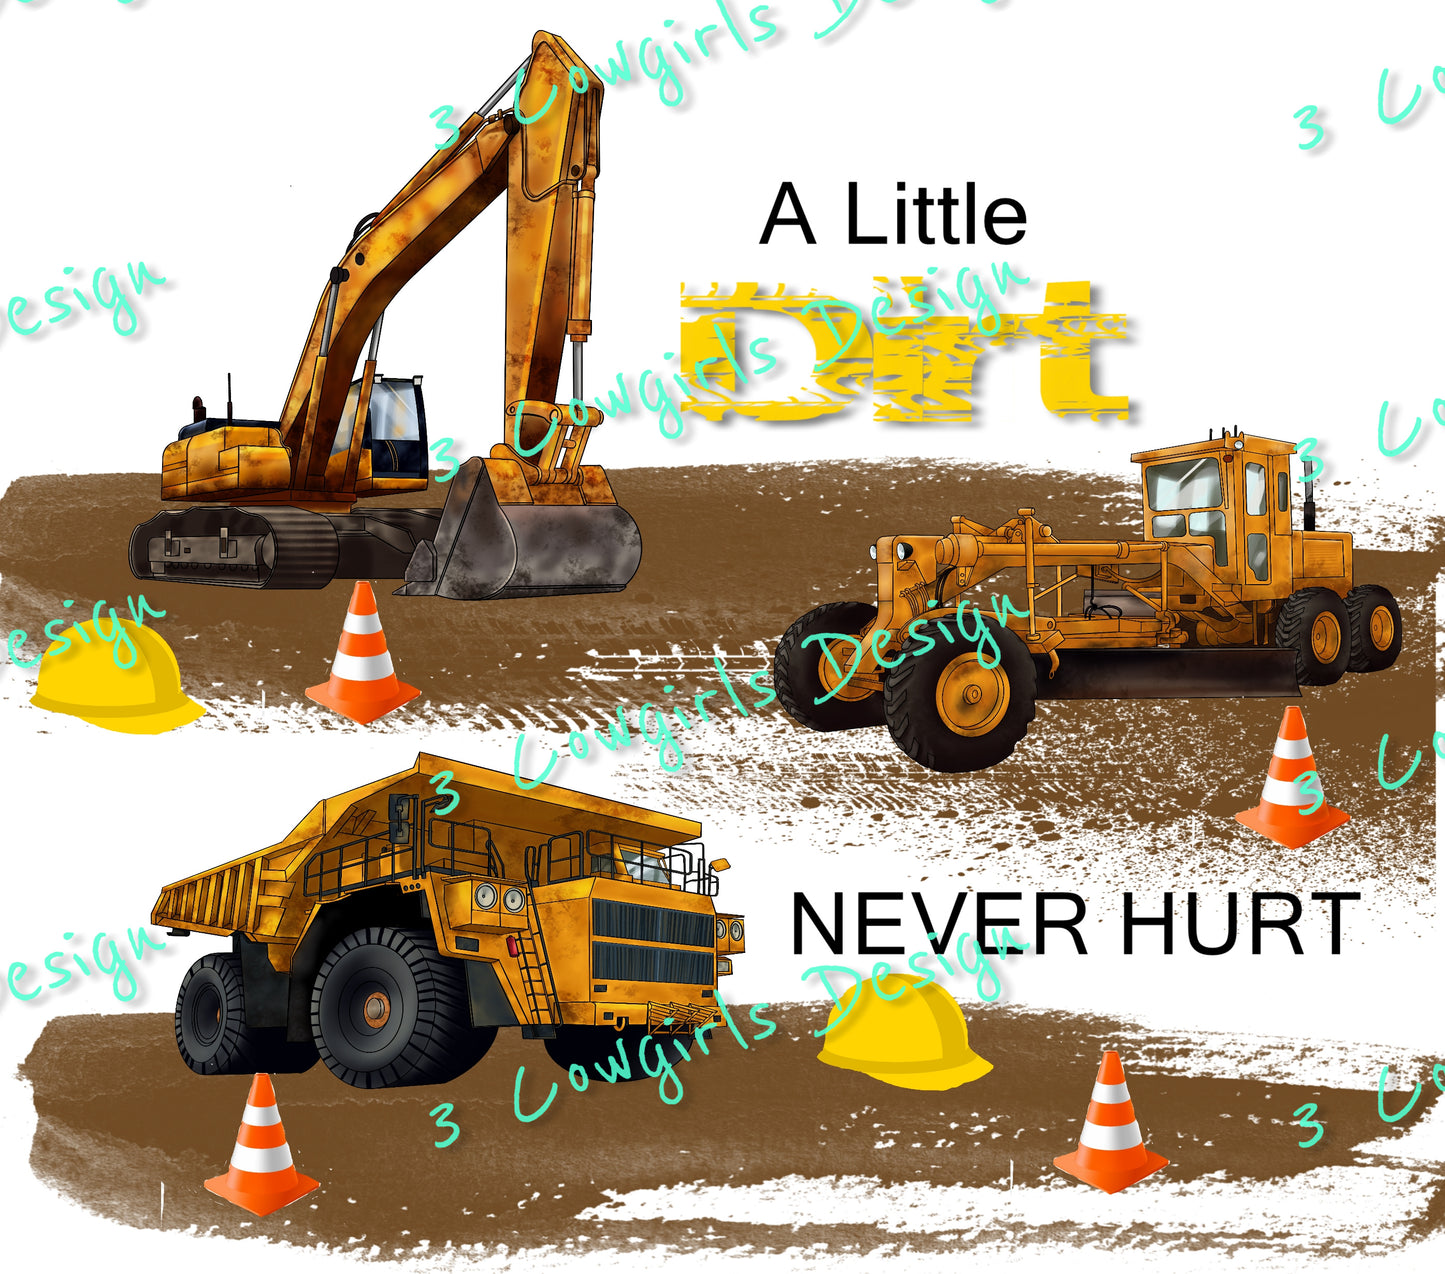 52 A little dirt never hurt- Excavator